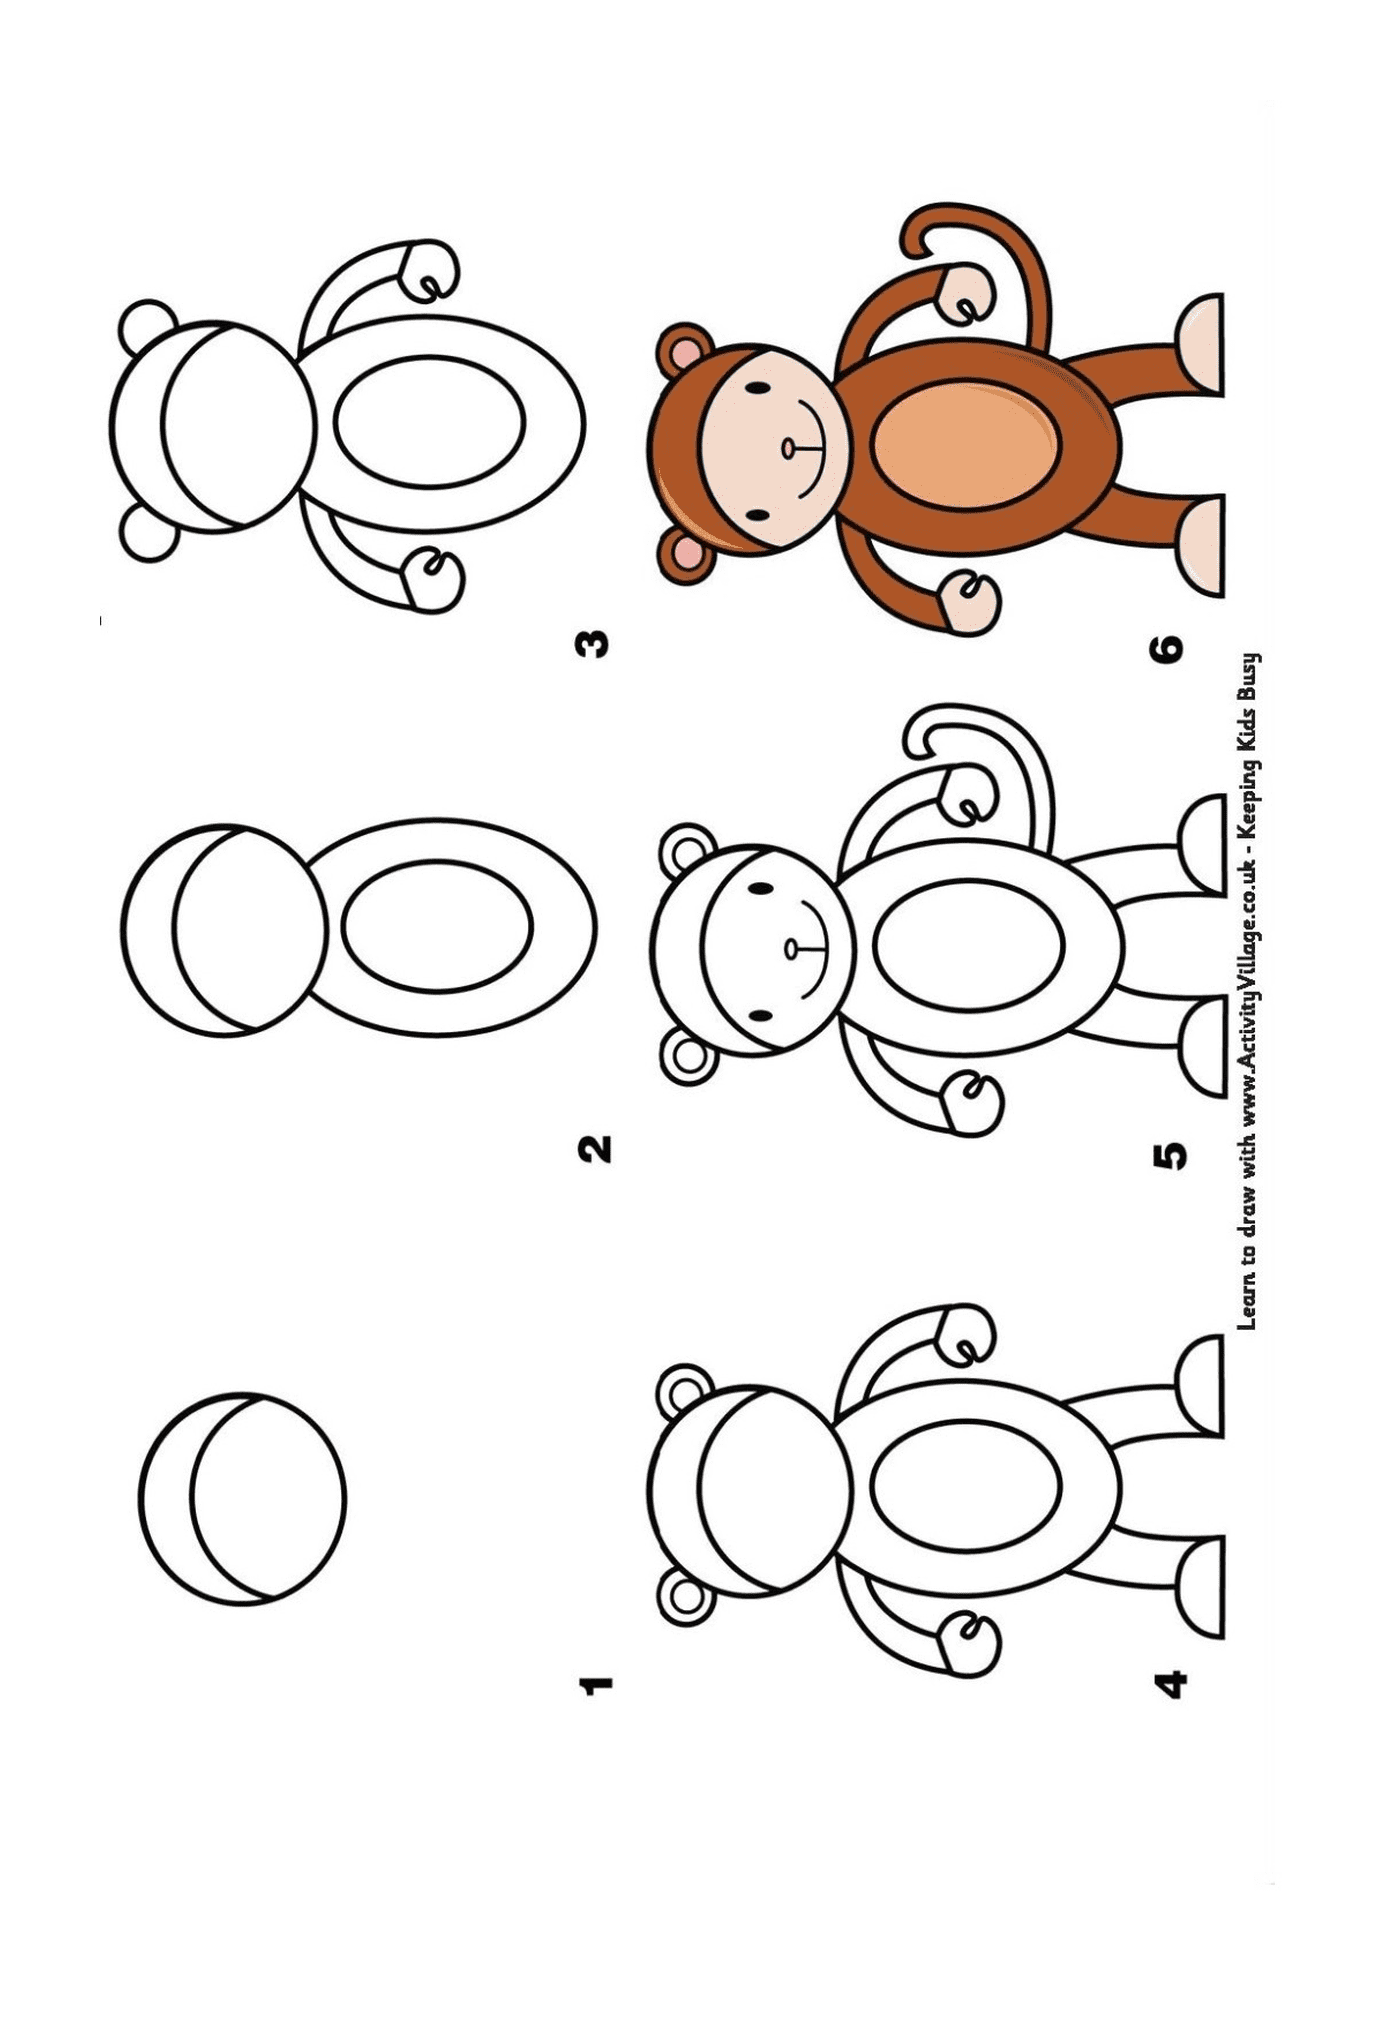   Comment dessiner un singe étape par étape 